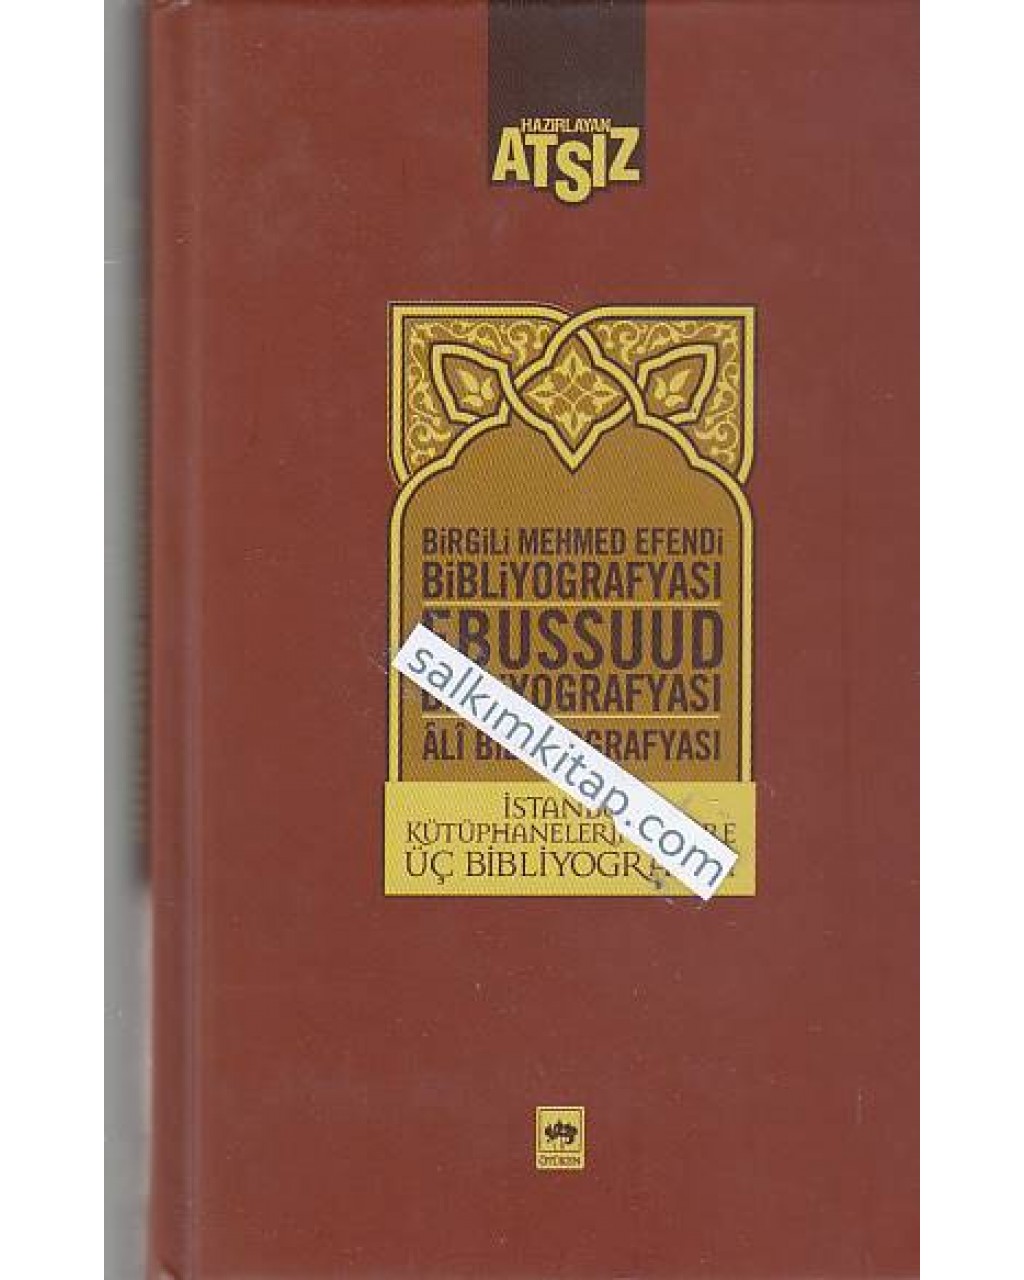 İstanbul Kütüphanelerine Göre Üç Bibliyografya: Birgili Mehmet Efendi - Ebussuud Efendi- Ali Bibliyografyası